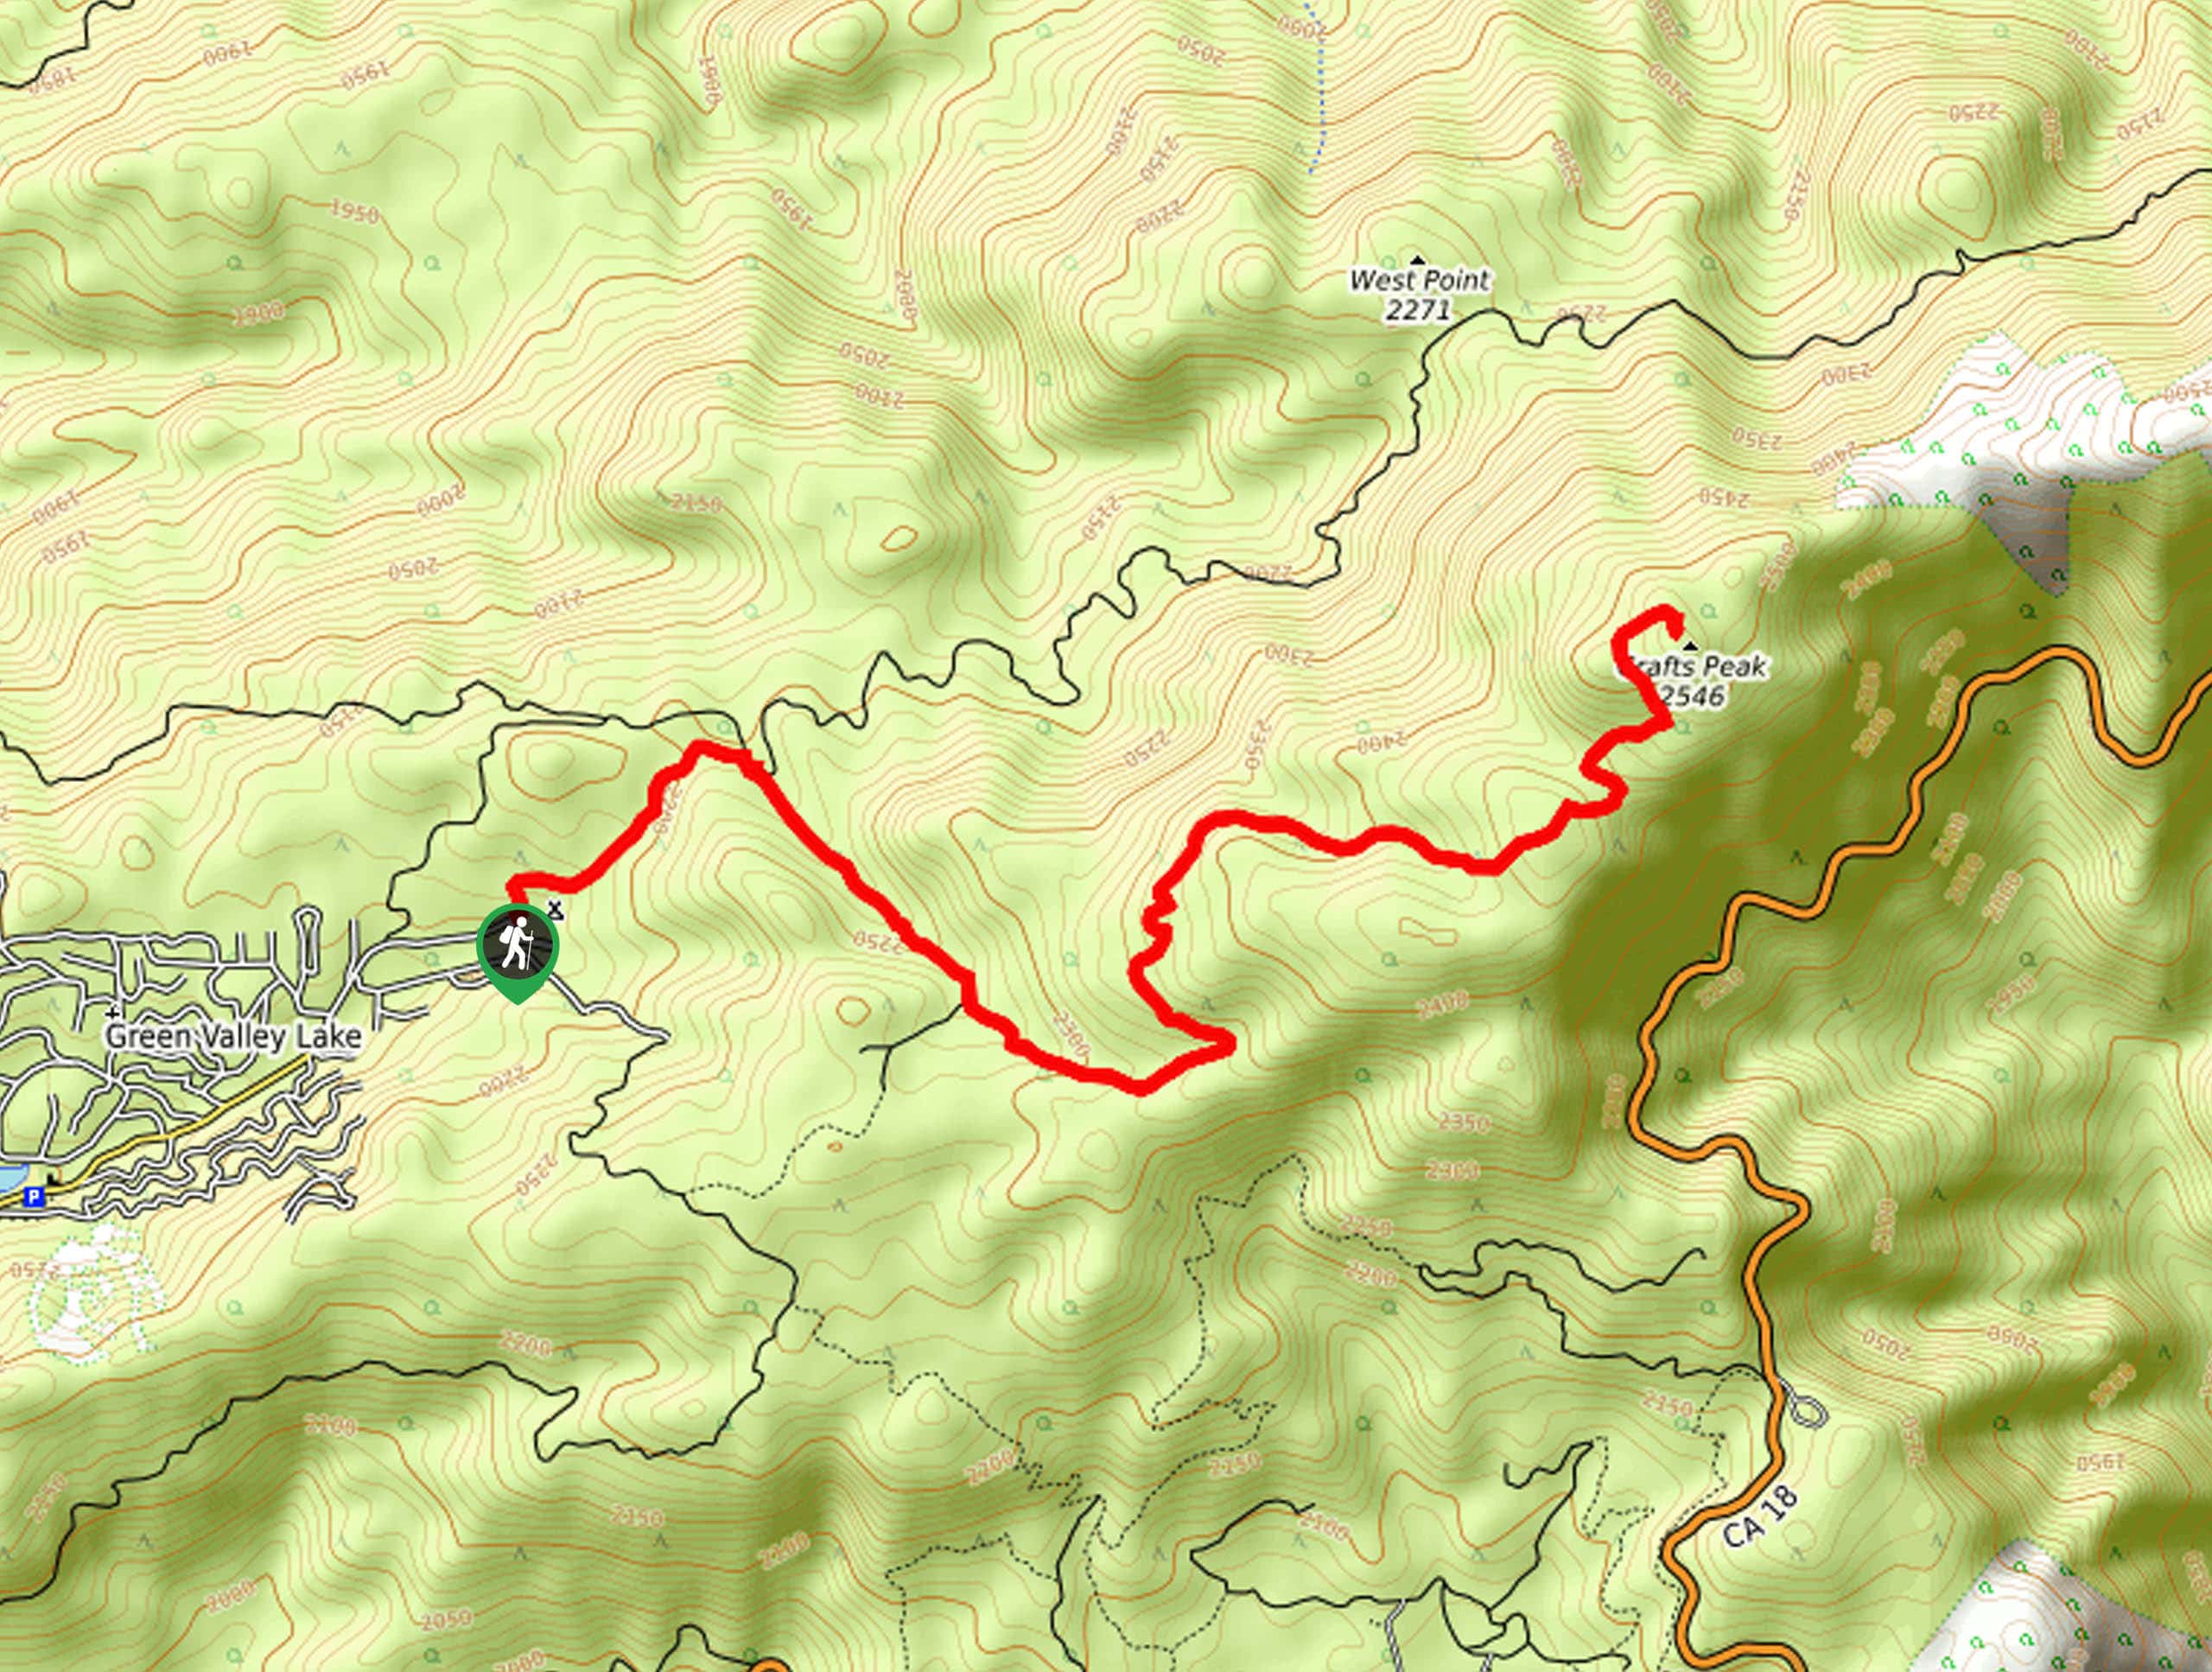 Crafts Peak Trail Map